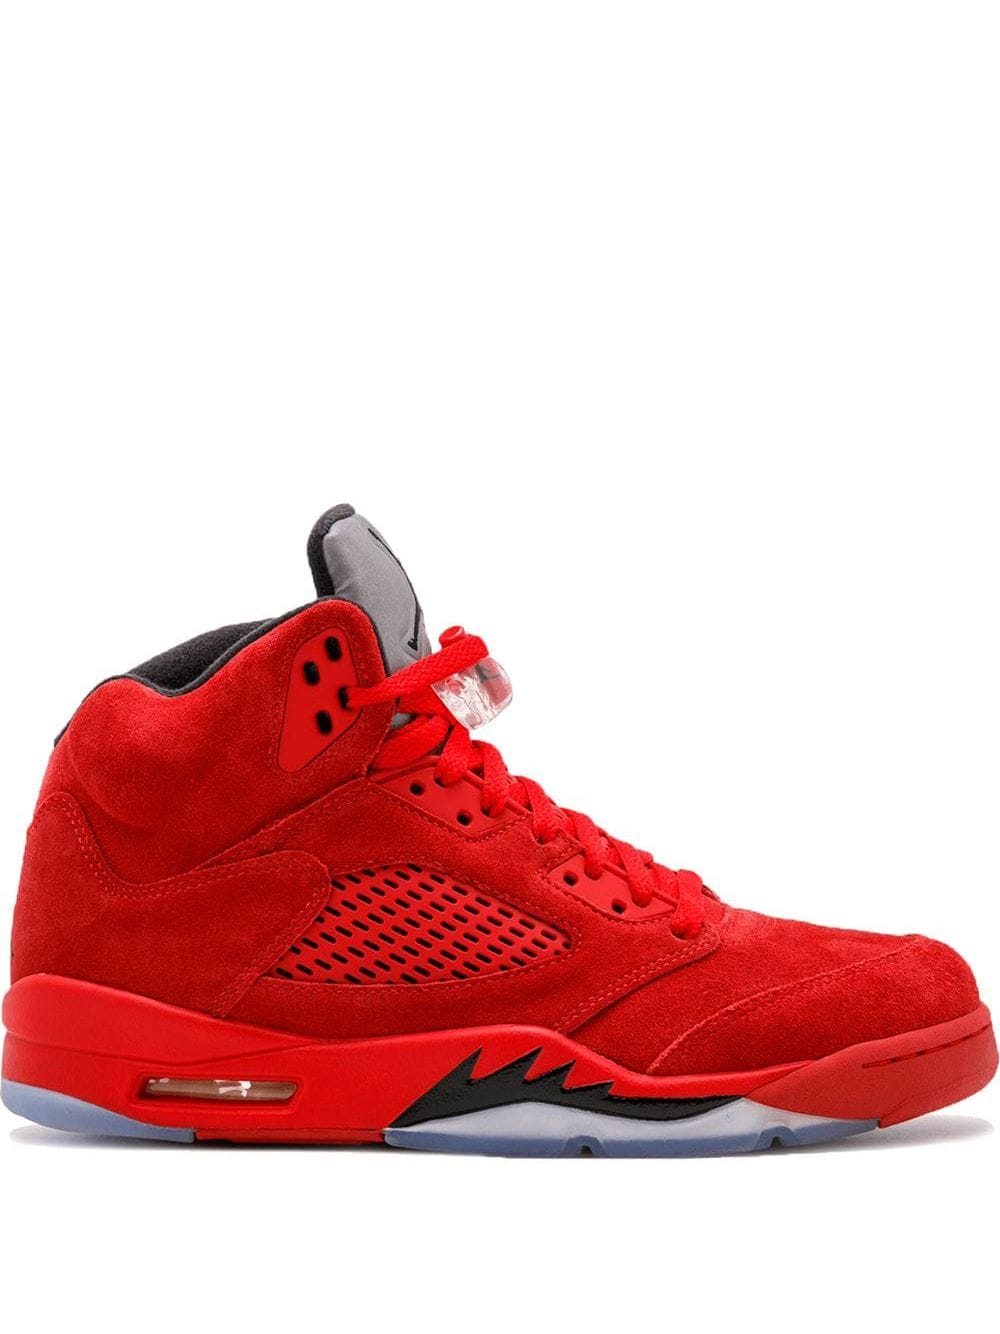 Jordan Air Jordan 5 Retro "Red Suede" sneakers